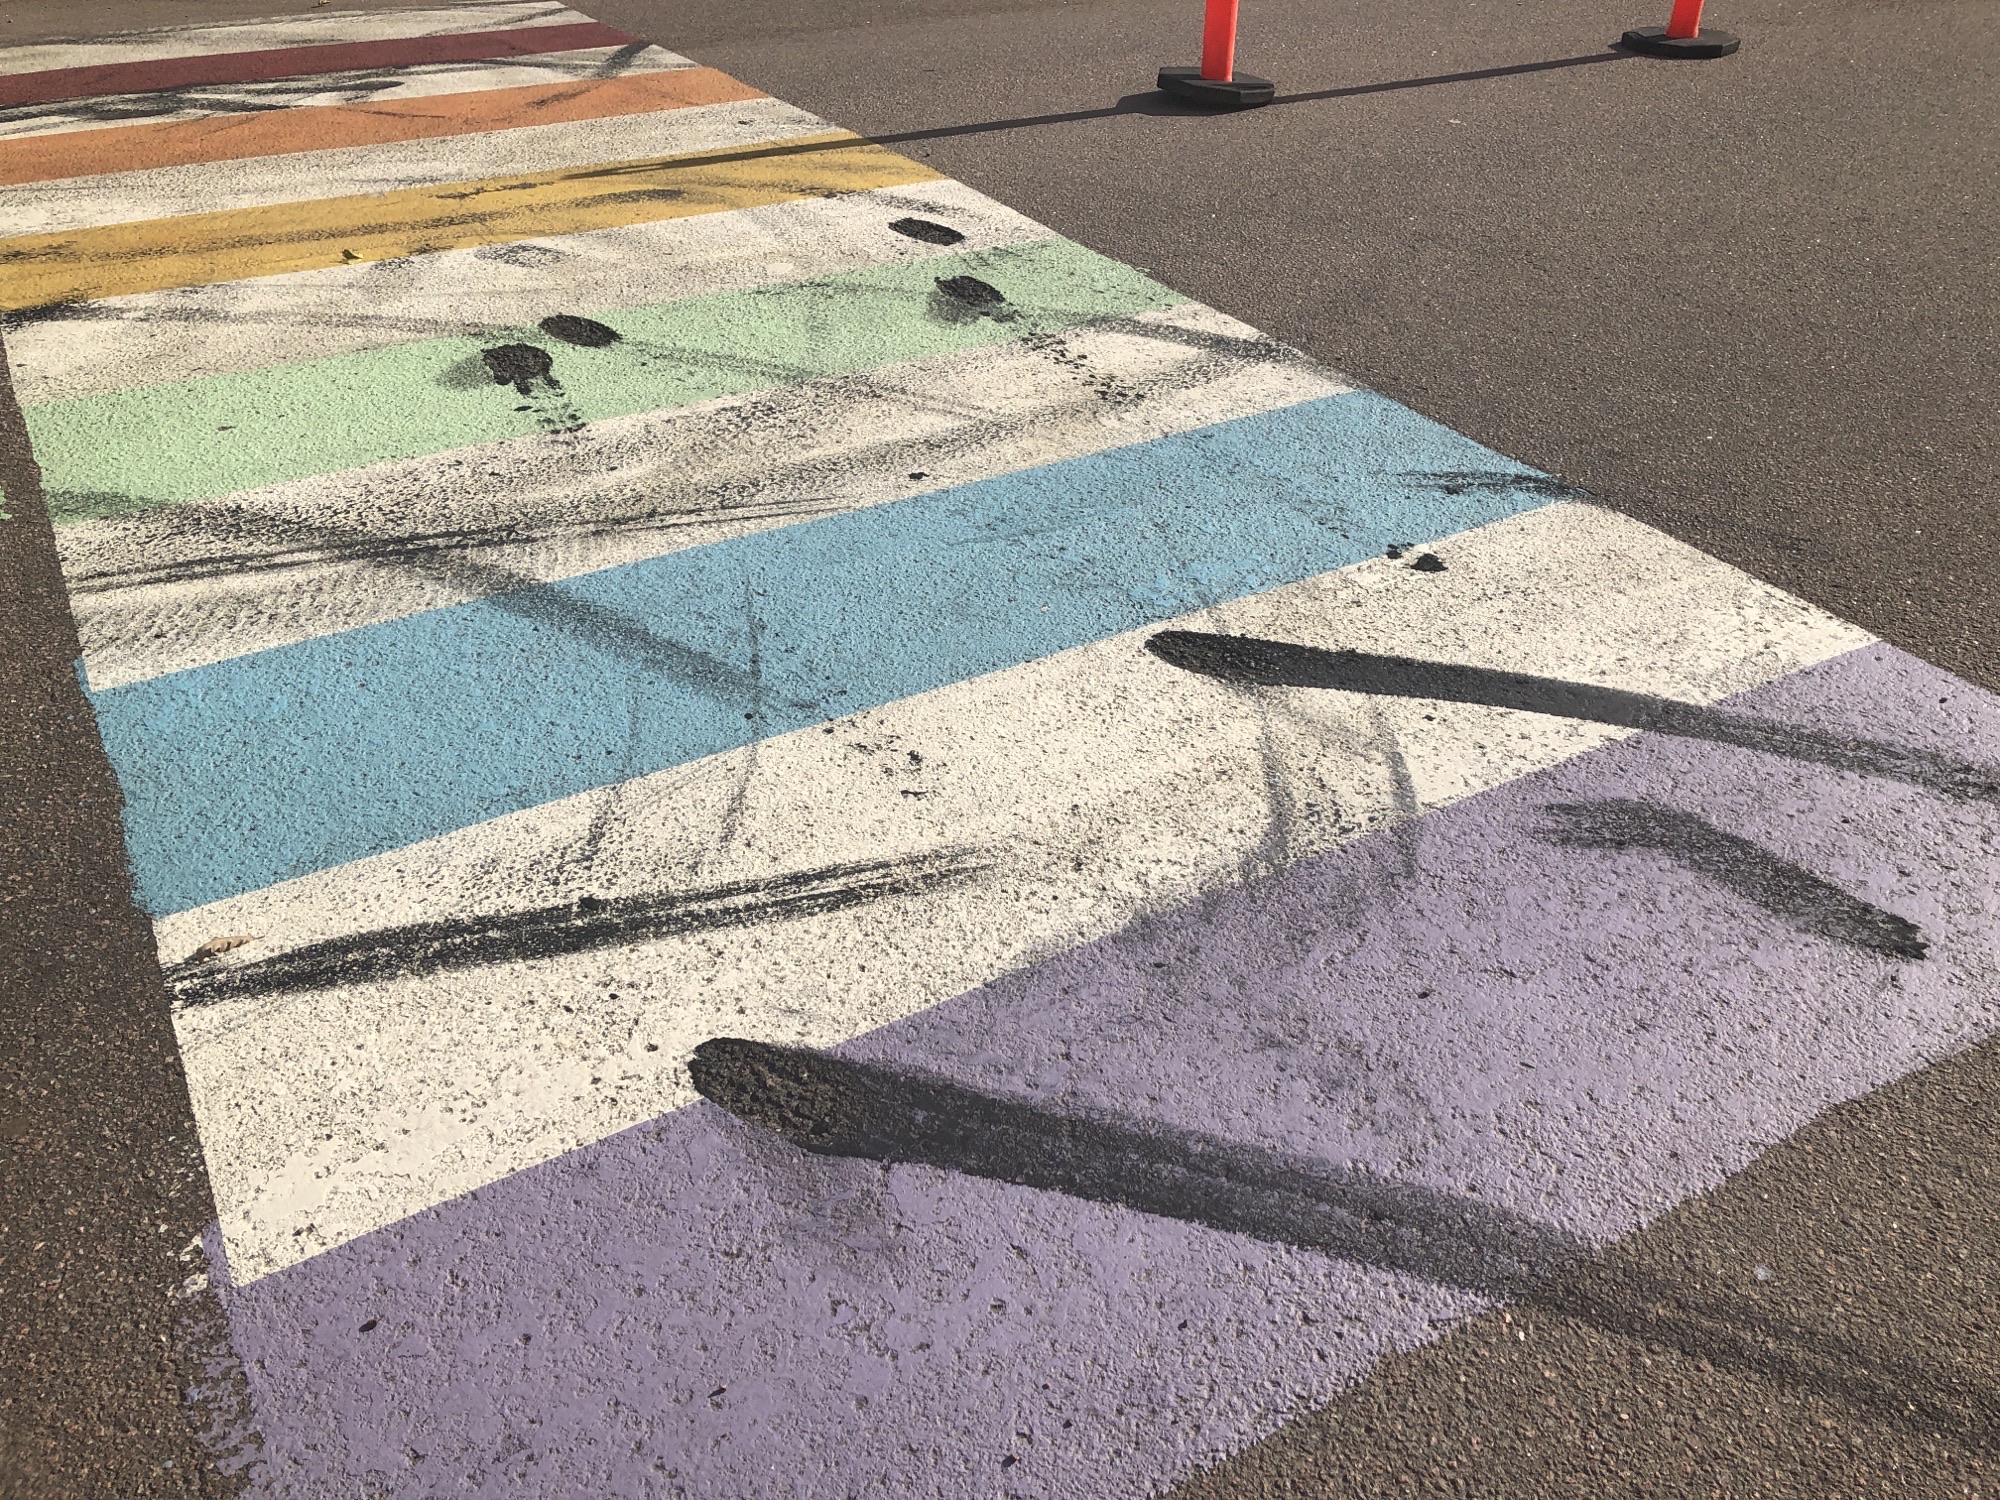 Memramcook, N.B. considers lawsuit over Pride crosswalk vandalism